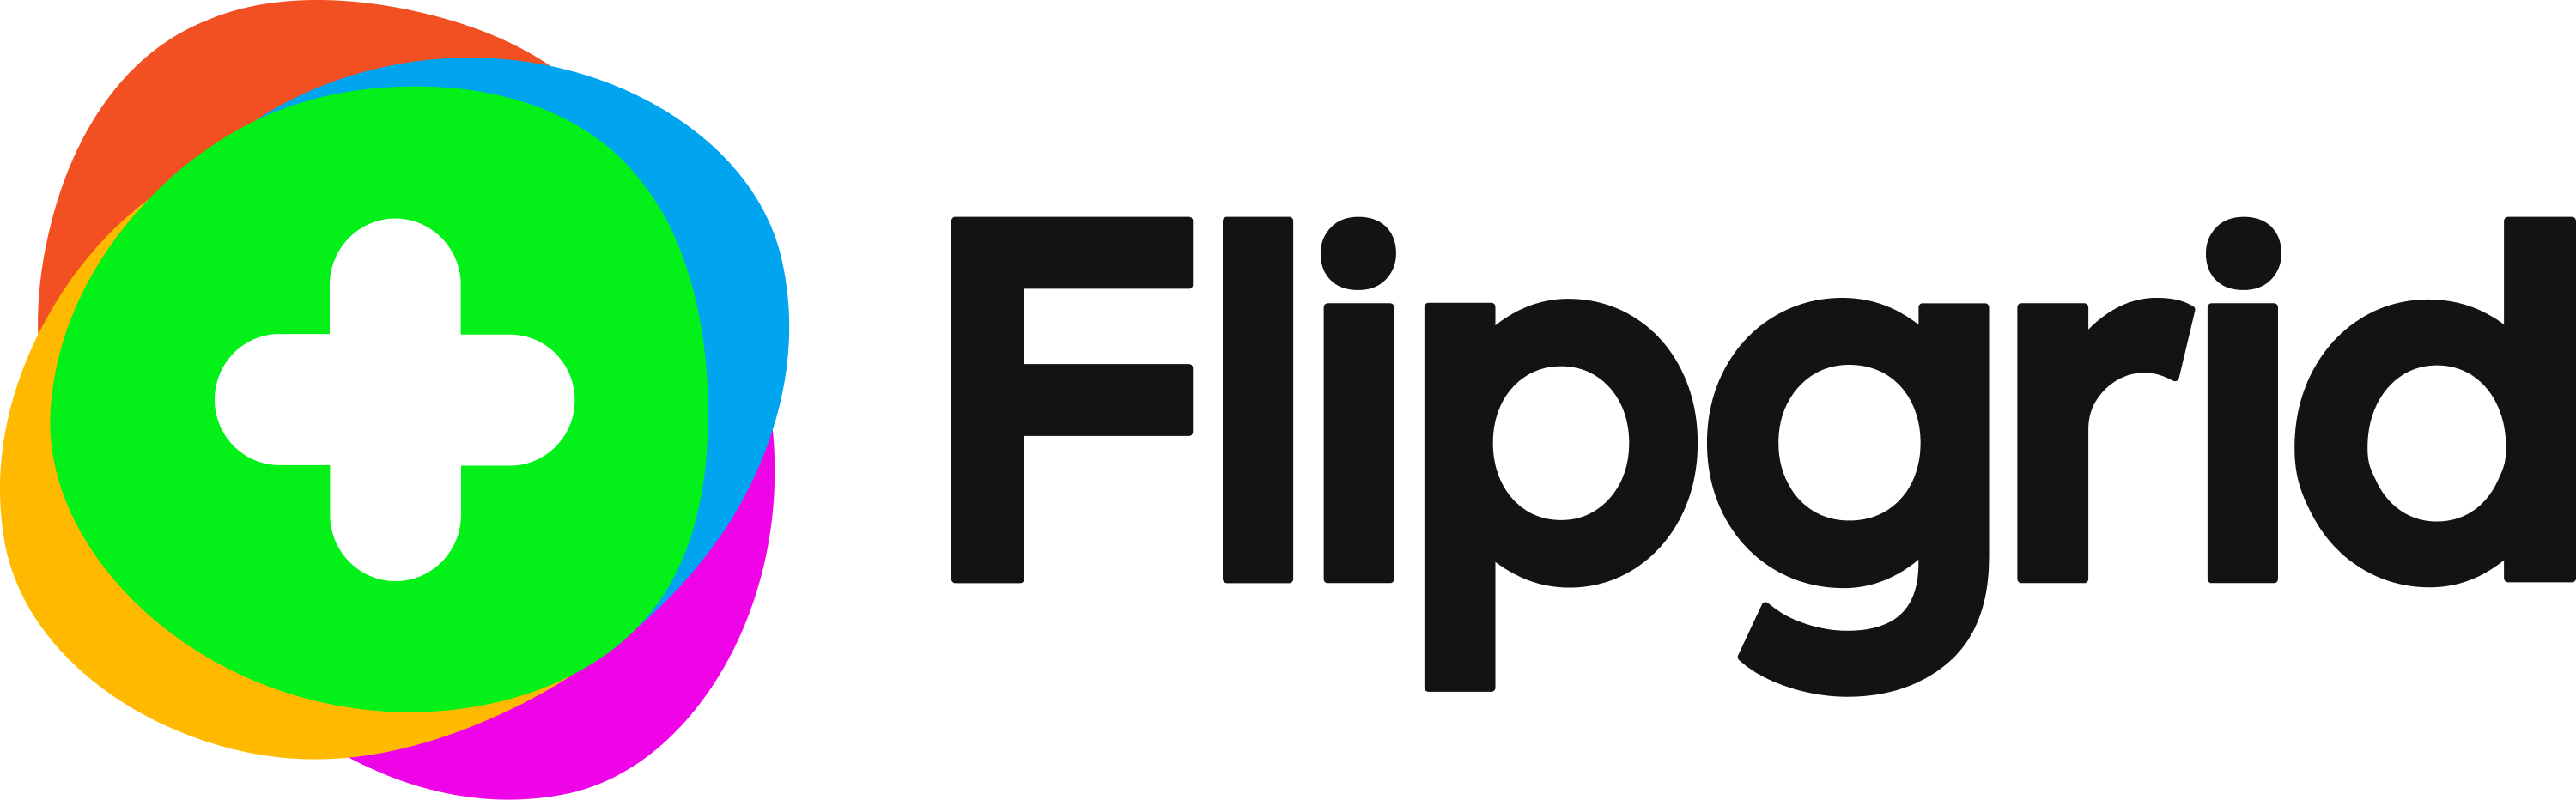 Flipgrid_Logo.png